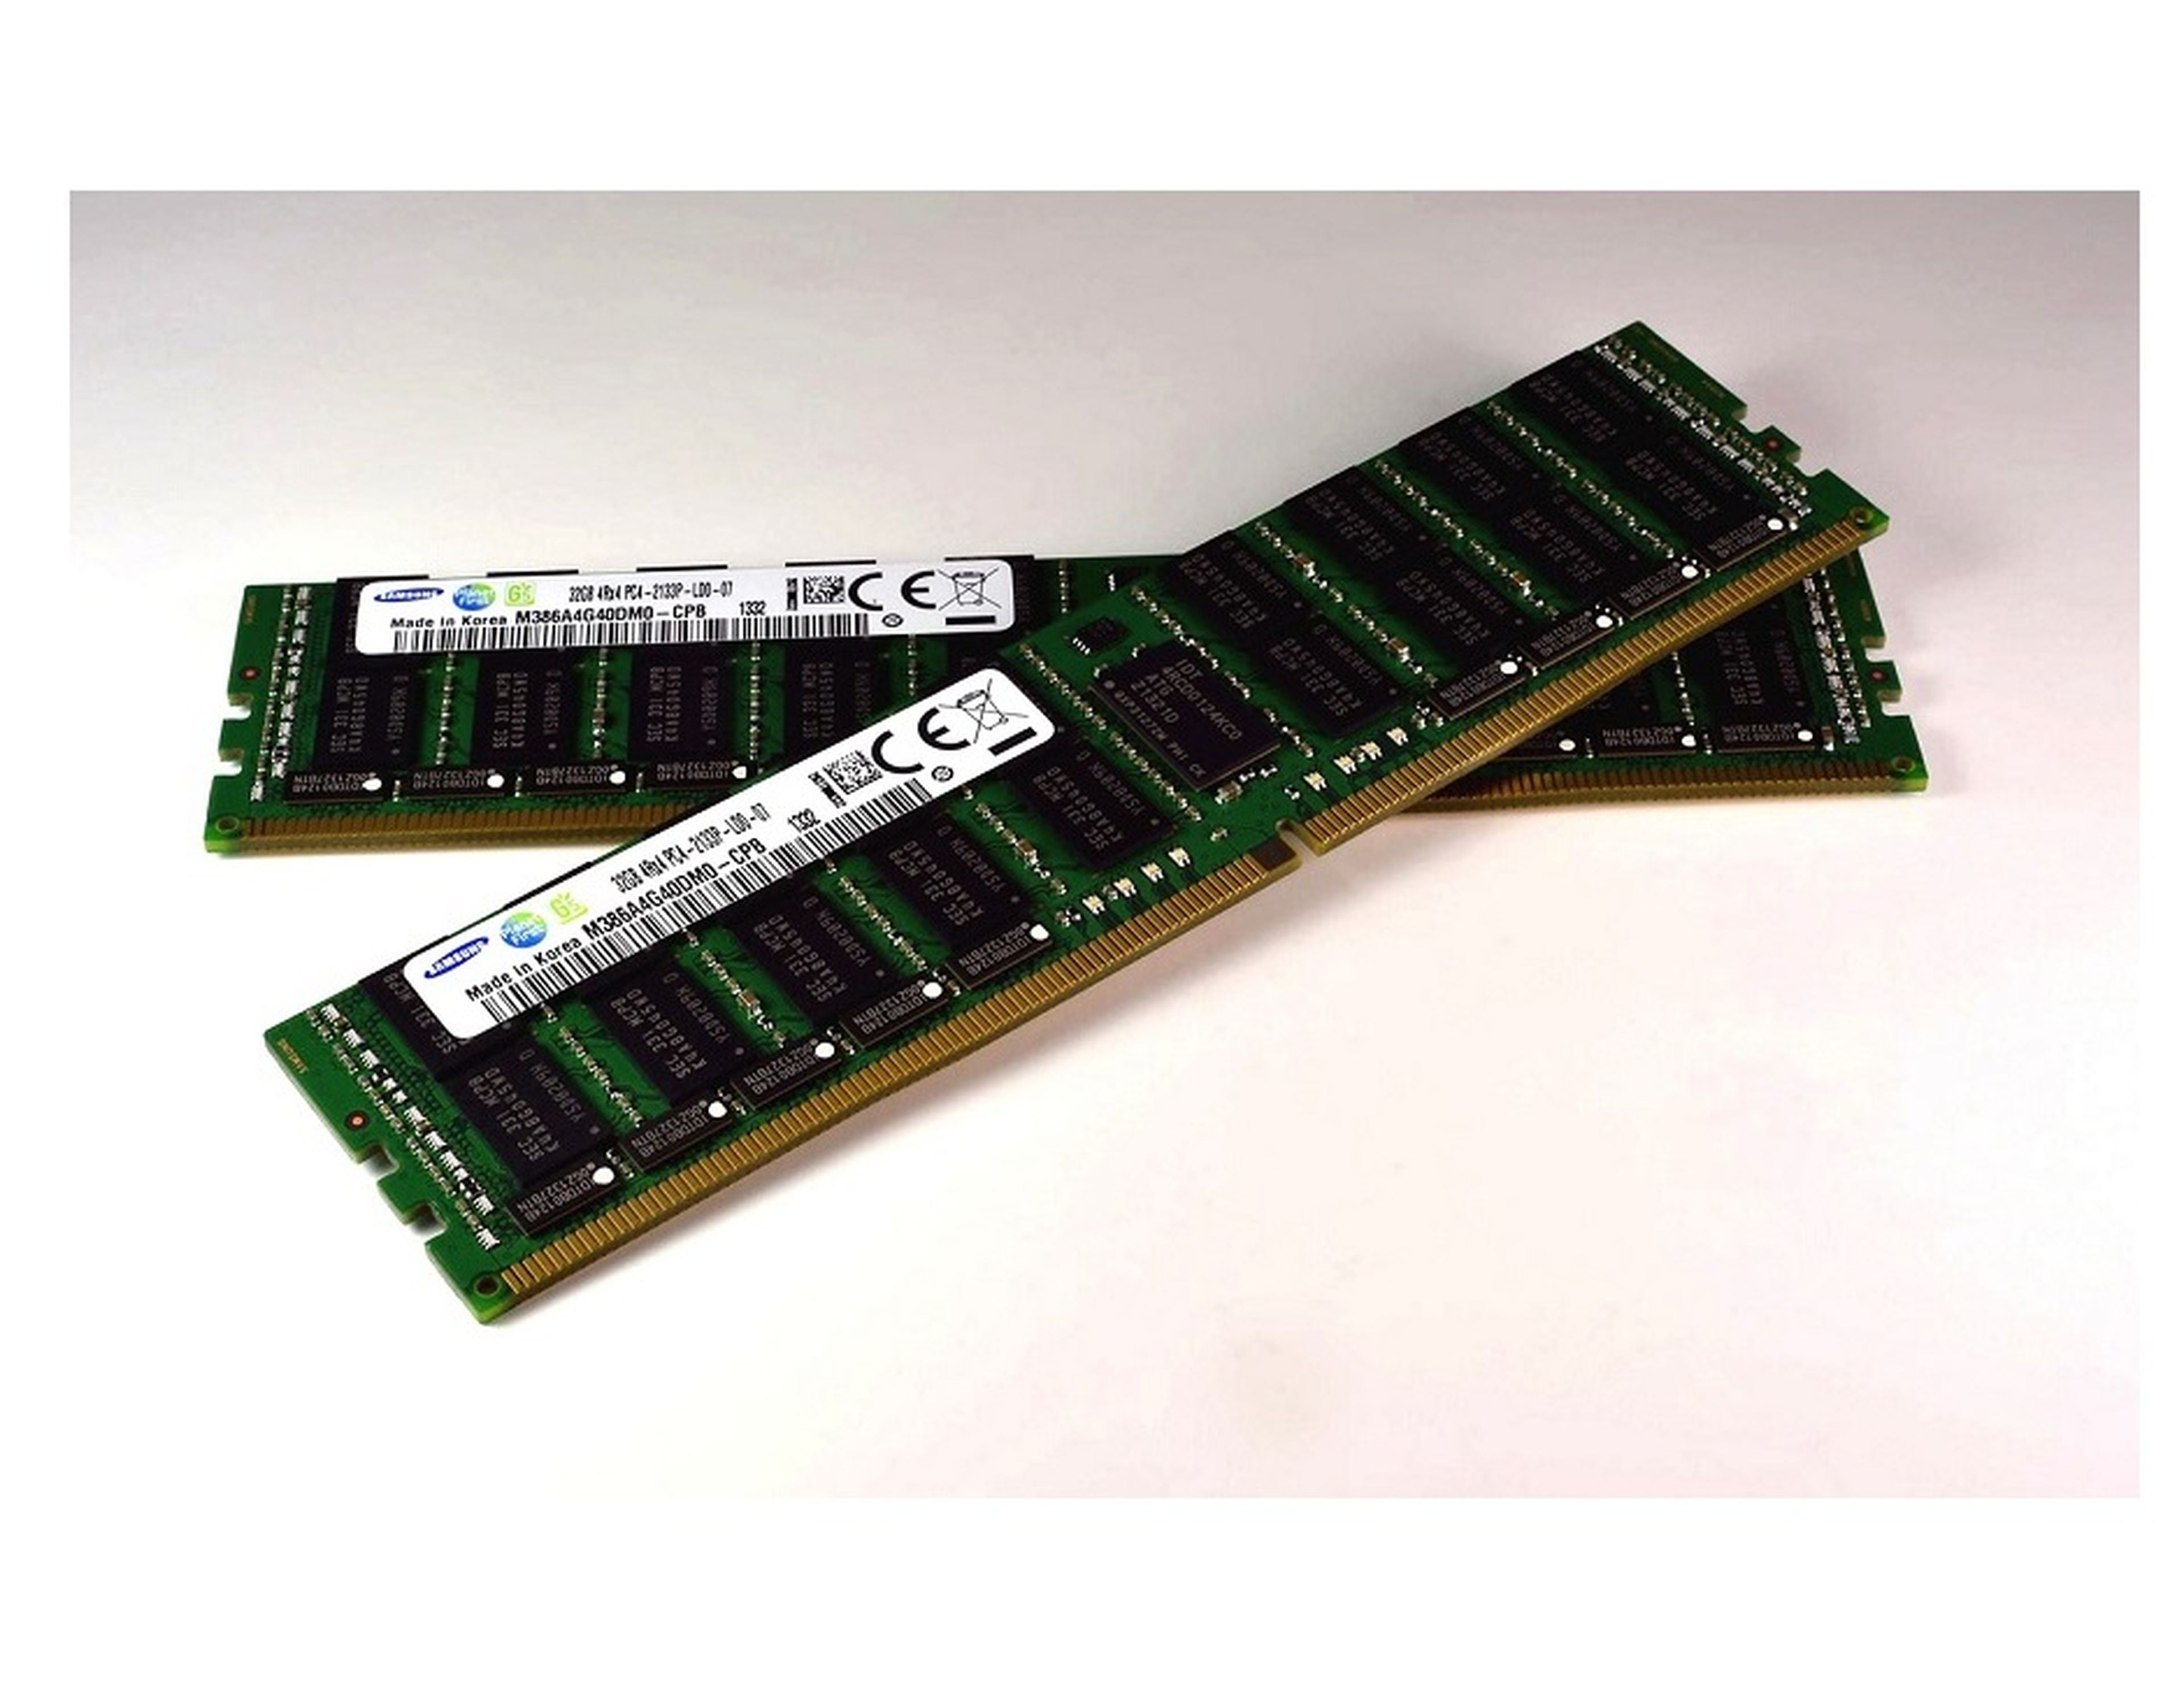 A tiempo tira compañera de clases Samsung produce memorias RAM DDR4 de 16 y 32 Gigabytes | Computer Hoy